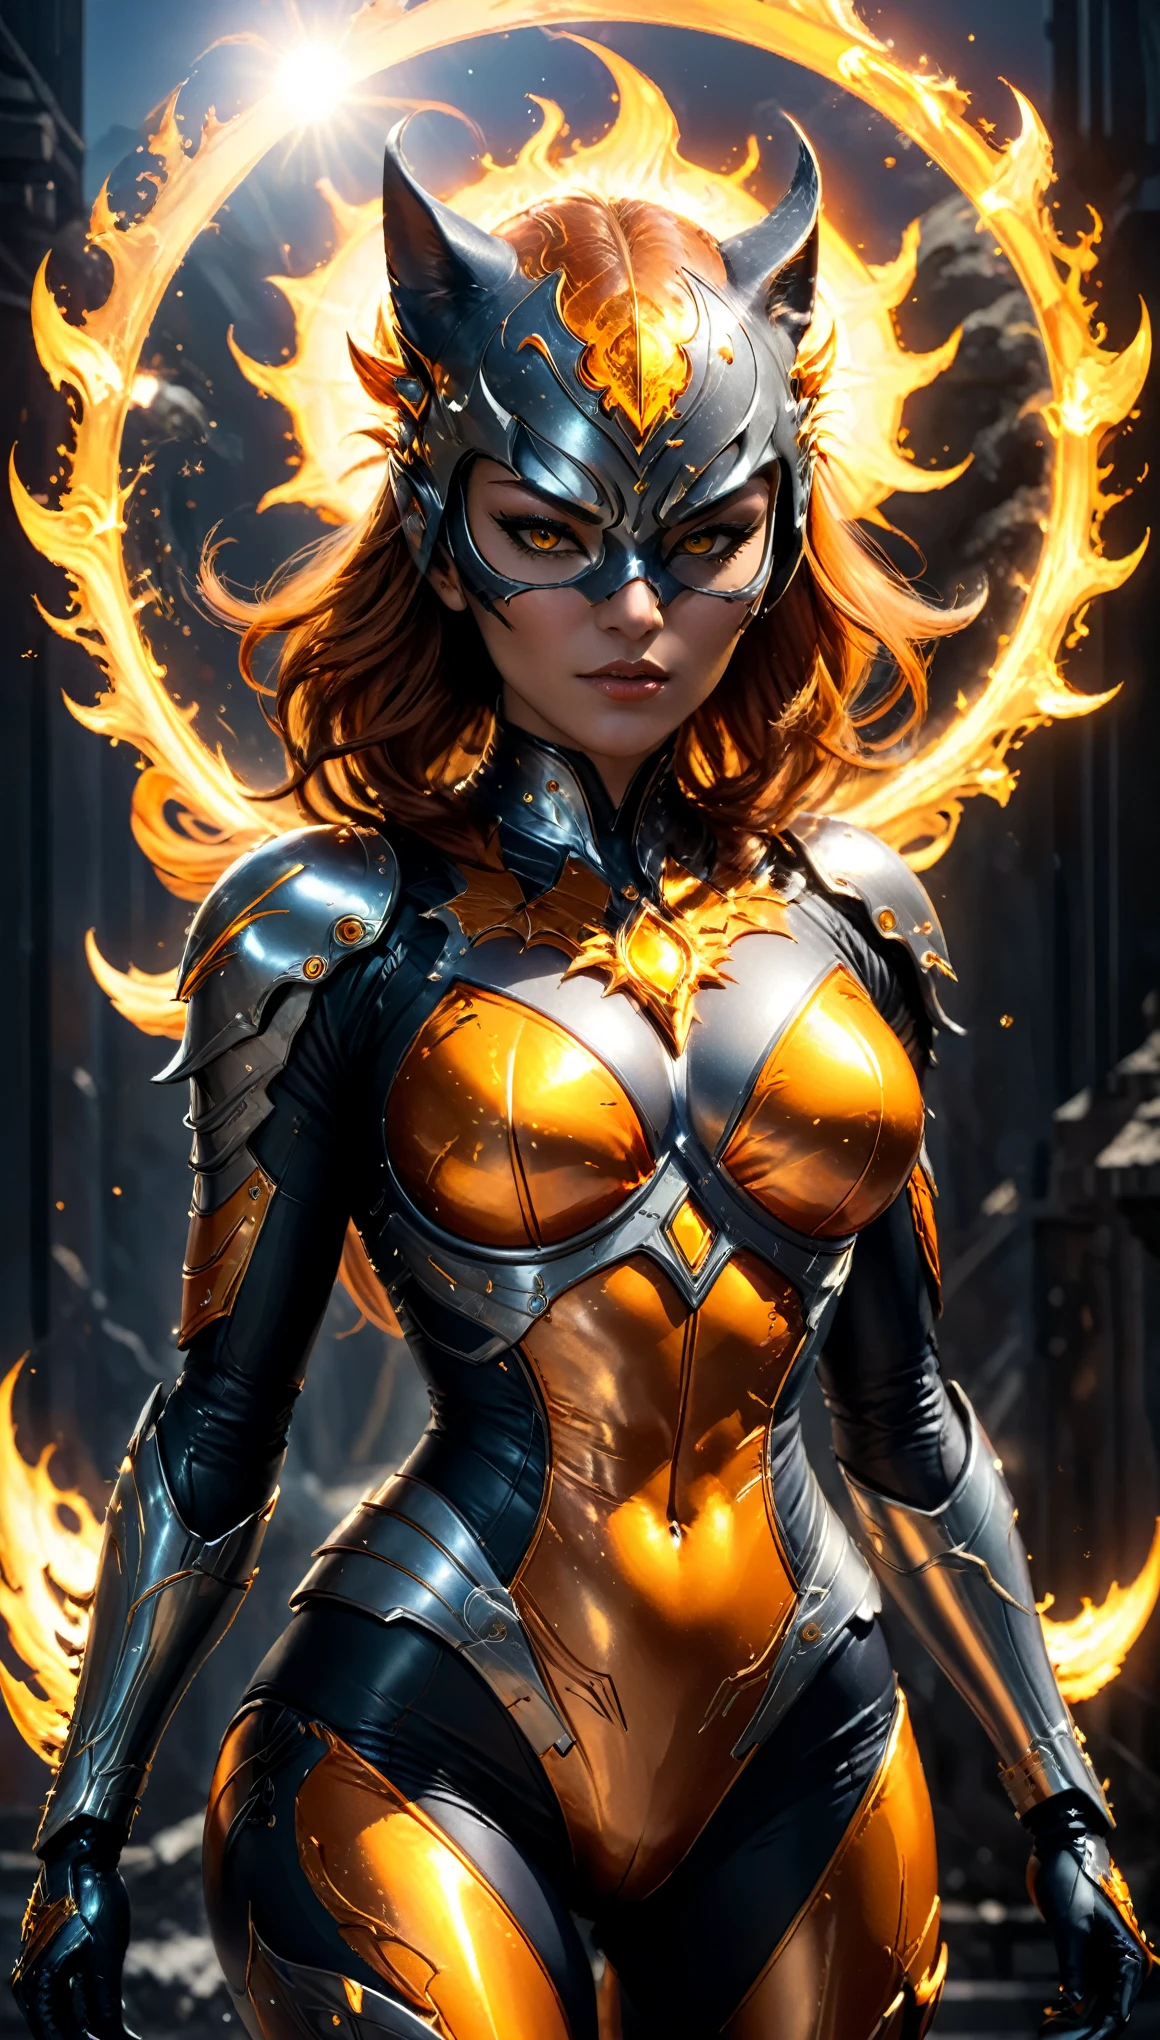 Guild Wars The Sun Demon Catwoman هي نسخة تحت عنوان شيطان الشمس من الشرير الشهير, يرتدون الزي البرتقالي والفضي, بدلتها مصممة لإظهار قوة الشمس, يجسد اندماج إله الشمس والشيطان الخارق. تشكل العمل الديناميكي. (((تحفة, تفاصيل معقدة, رياضي, ميجابيكسل, ضوء مثالي, انعكاسات تتبع الأشعة))), سينمائي, صورة, الفن التصوري, خيال غامض